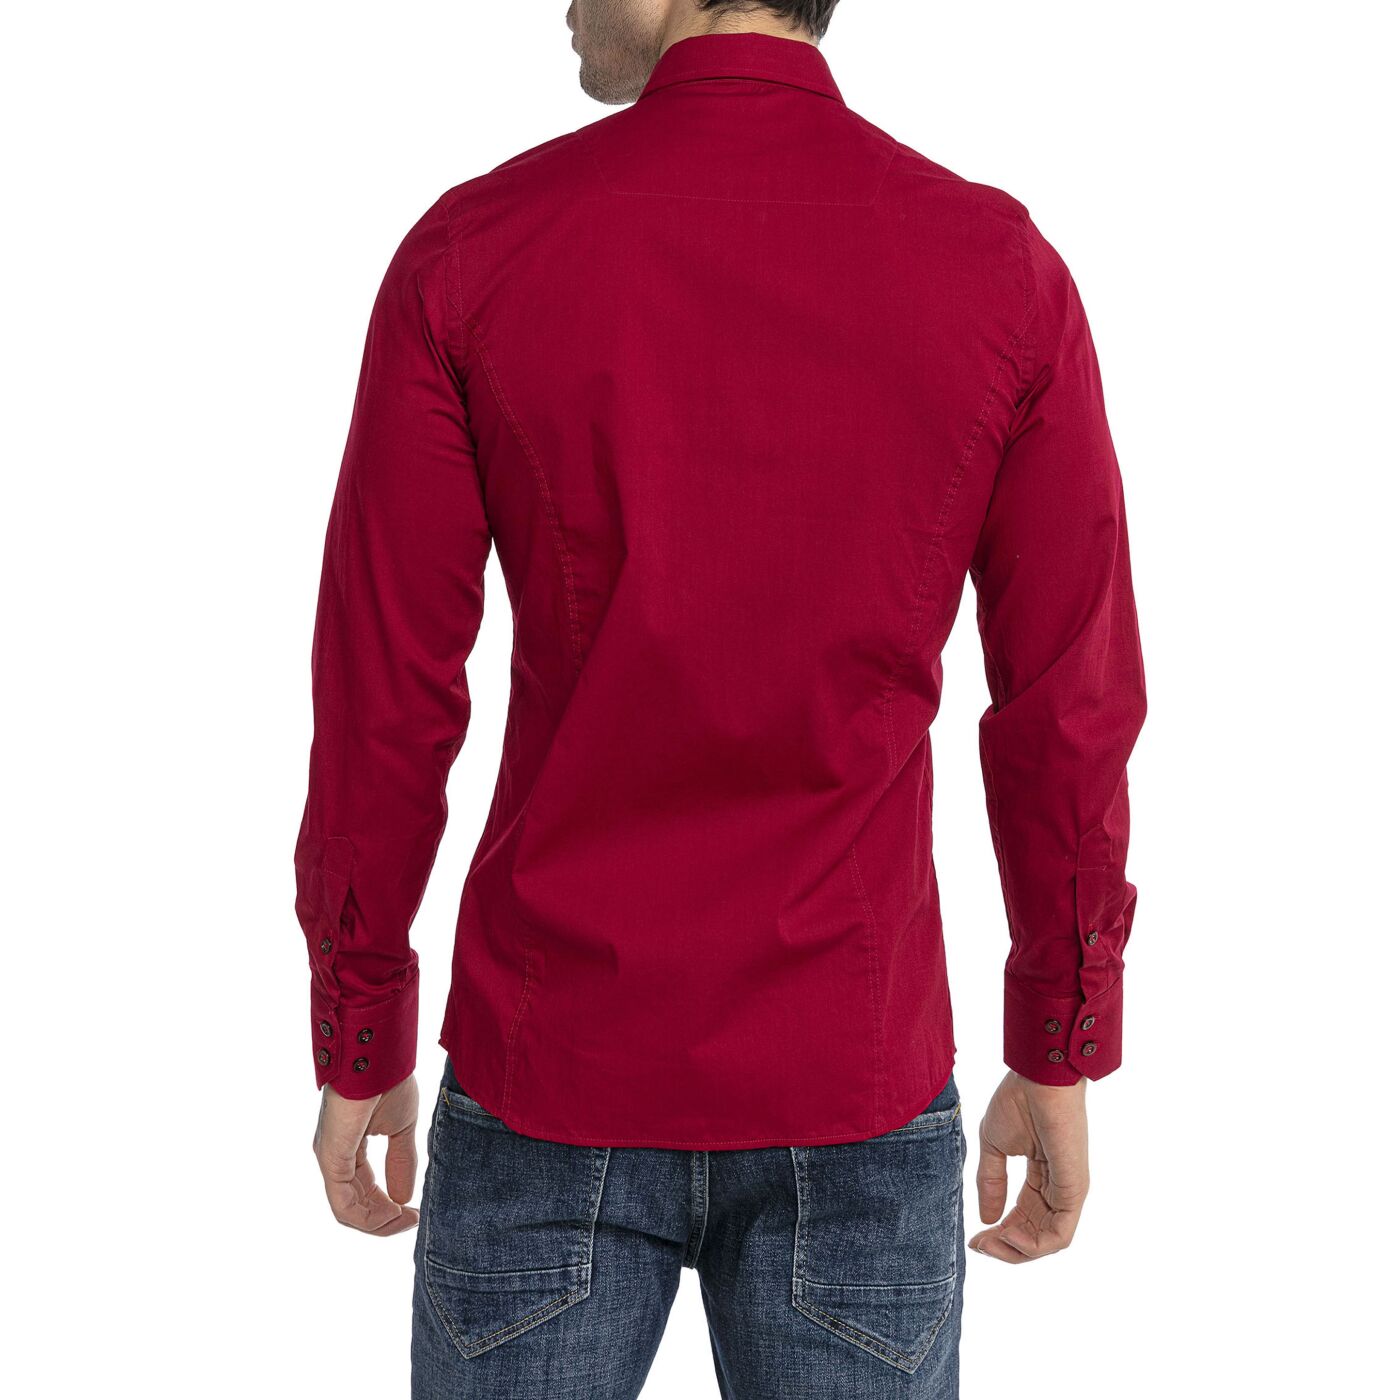 Fit 29,90 , Langarm Red Hemd Design Bordeaux Herren Slim Bridge R-2111 Basic €